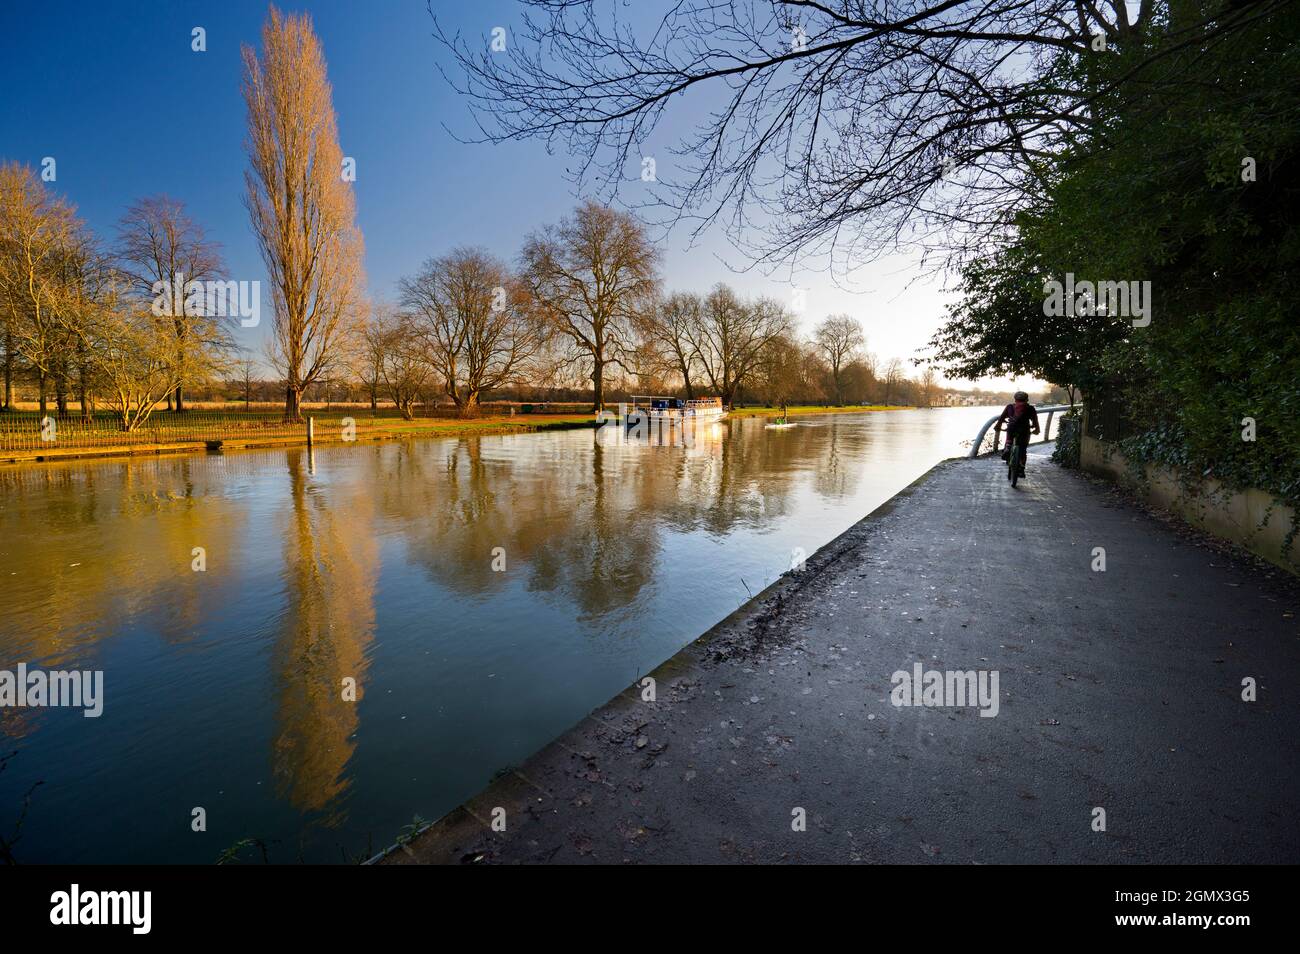 Oxford, Inglaterra - 10 de enero de 2020; dos personas a la vista. Este puente peatonal es parte de mi paseo favorito por el Támesis en Oxford, Inglaterra, que corre por el sur Foto de stock